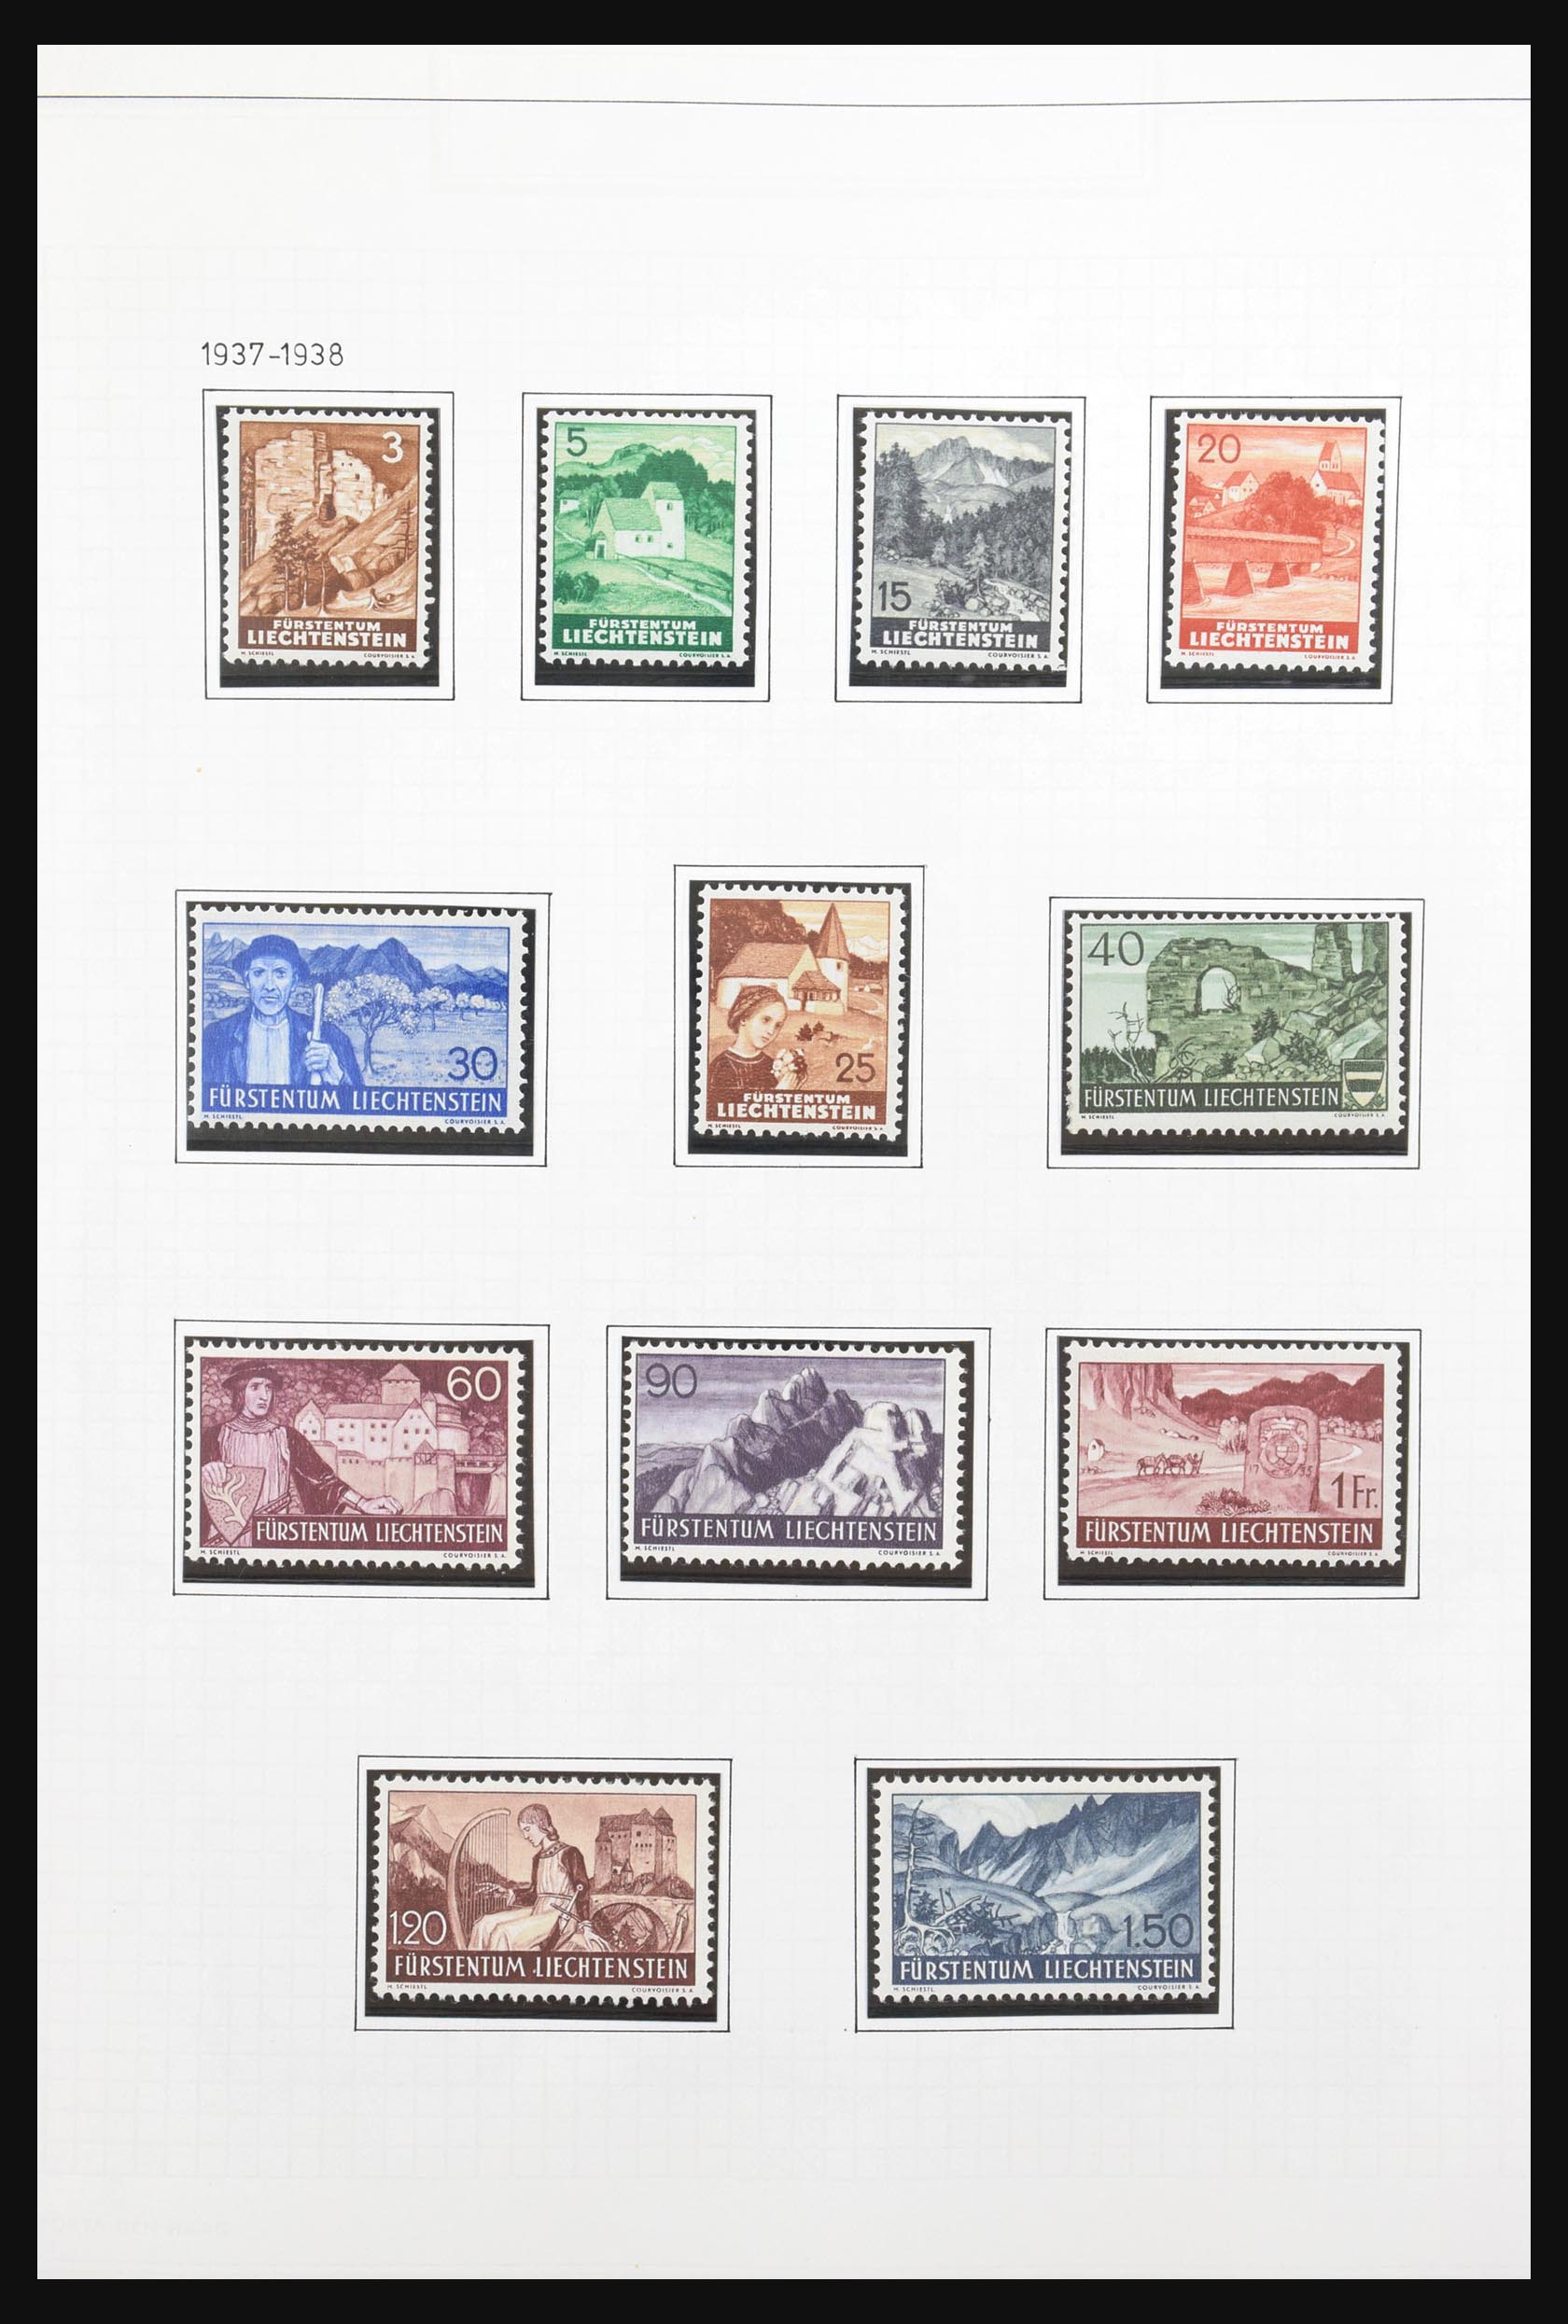 31131 014 - 31131 Liechtenstein 1912-2013.